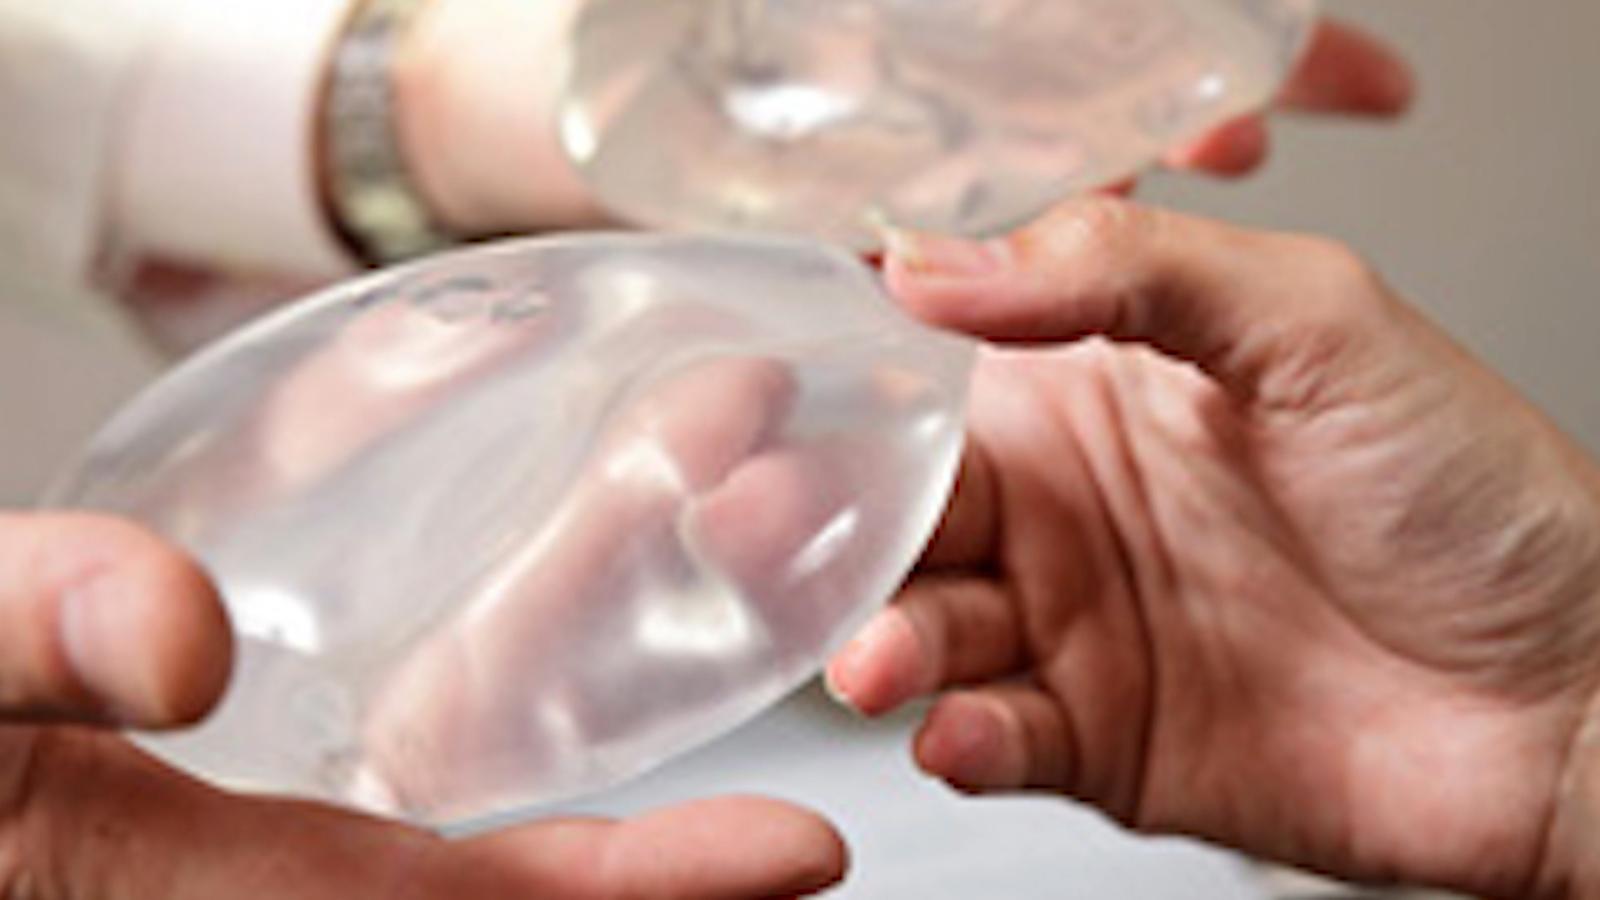 La FDA agrega regulación sobre los riesgos por implantes mamarios